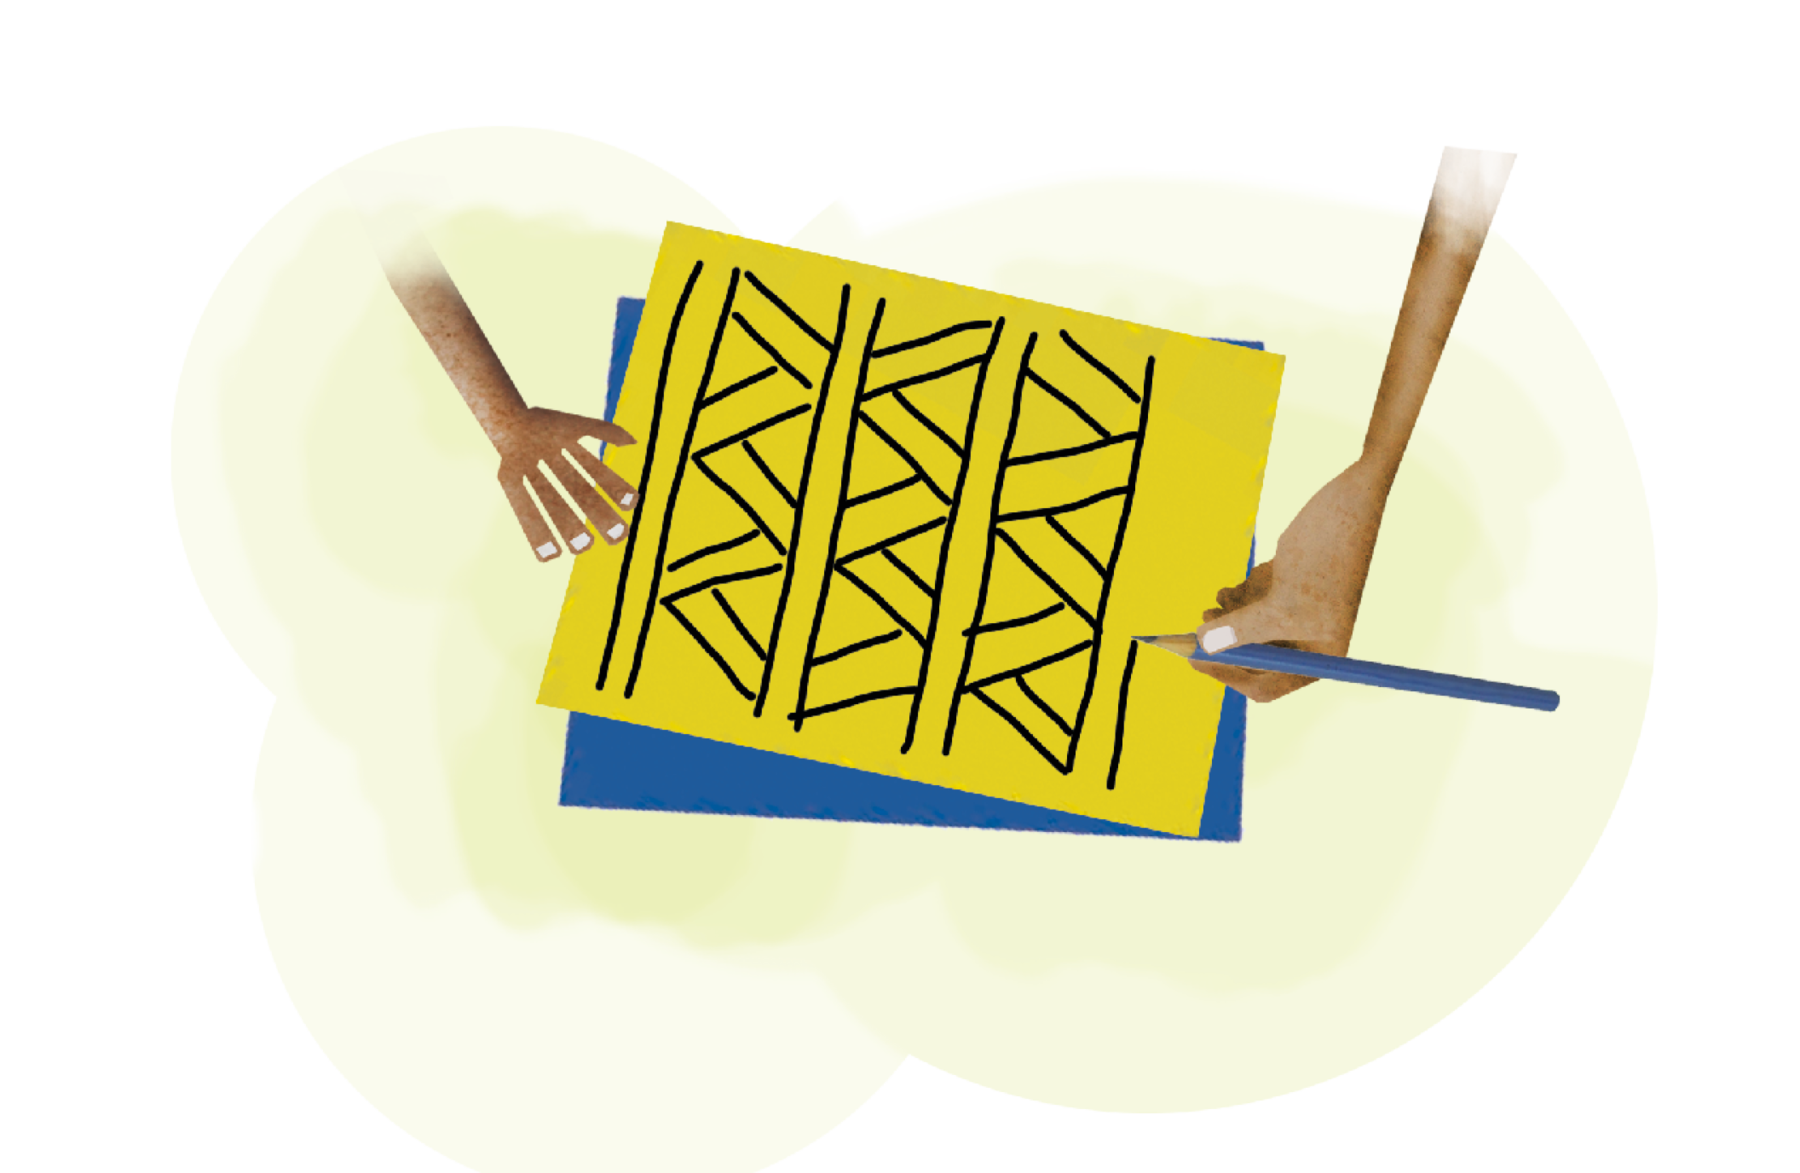 Ilustração. Destaque para uma cartolina amarela com desenhos que formam um padrão composto de linhas horizontais pretas e retas e triângulos entre os pares de linhas.